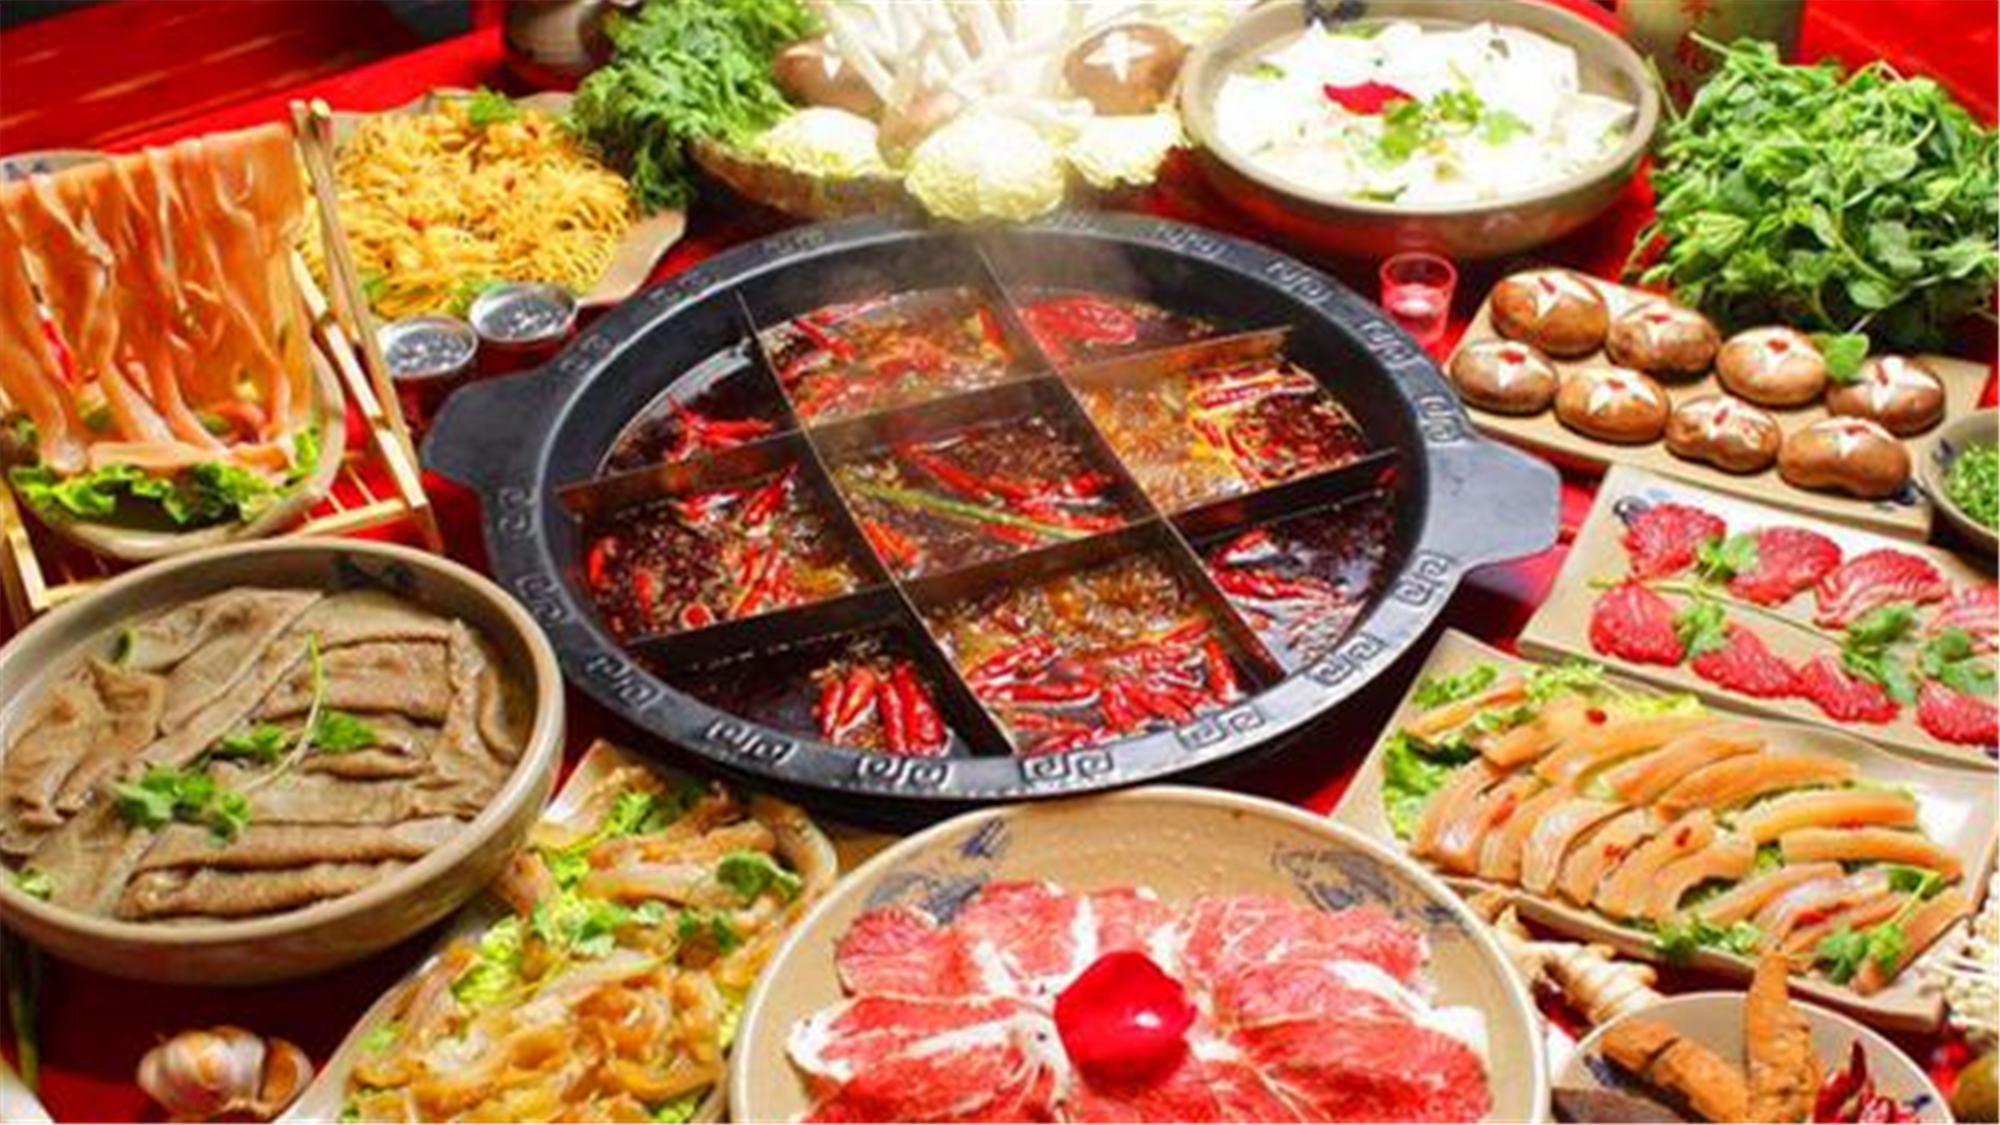 盘点老外最爱吃的5大中国美食,哪一种是你的最爱,了解一下!